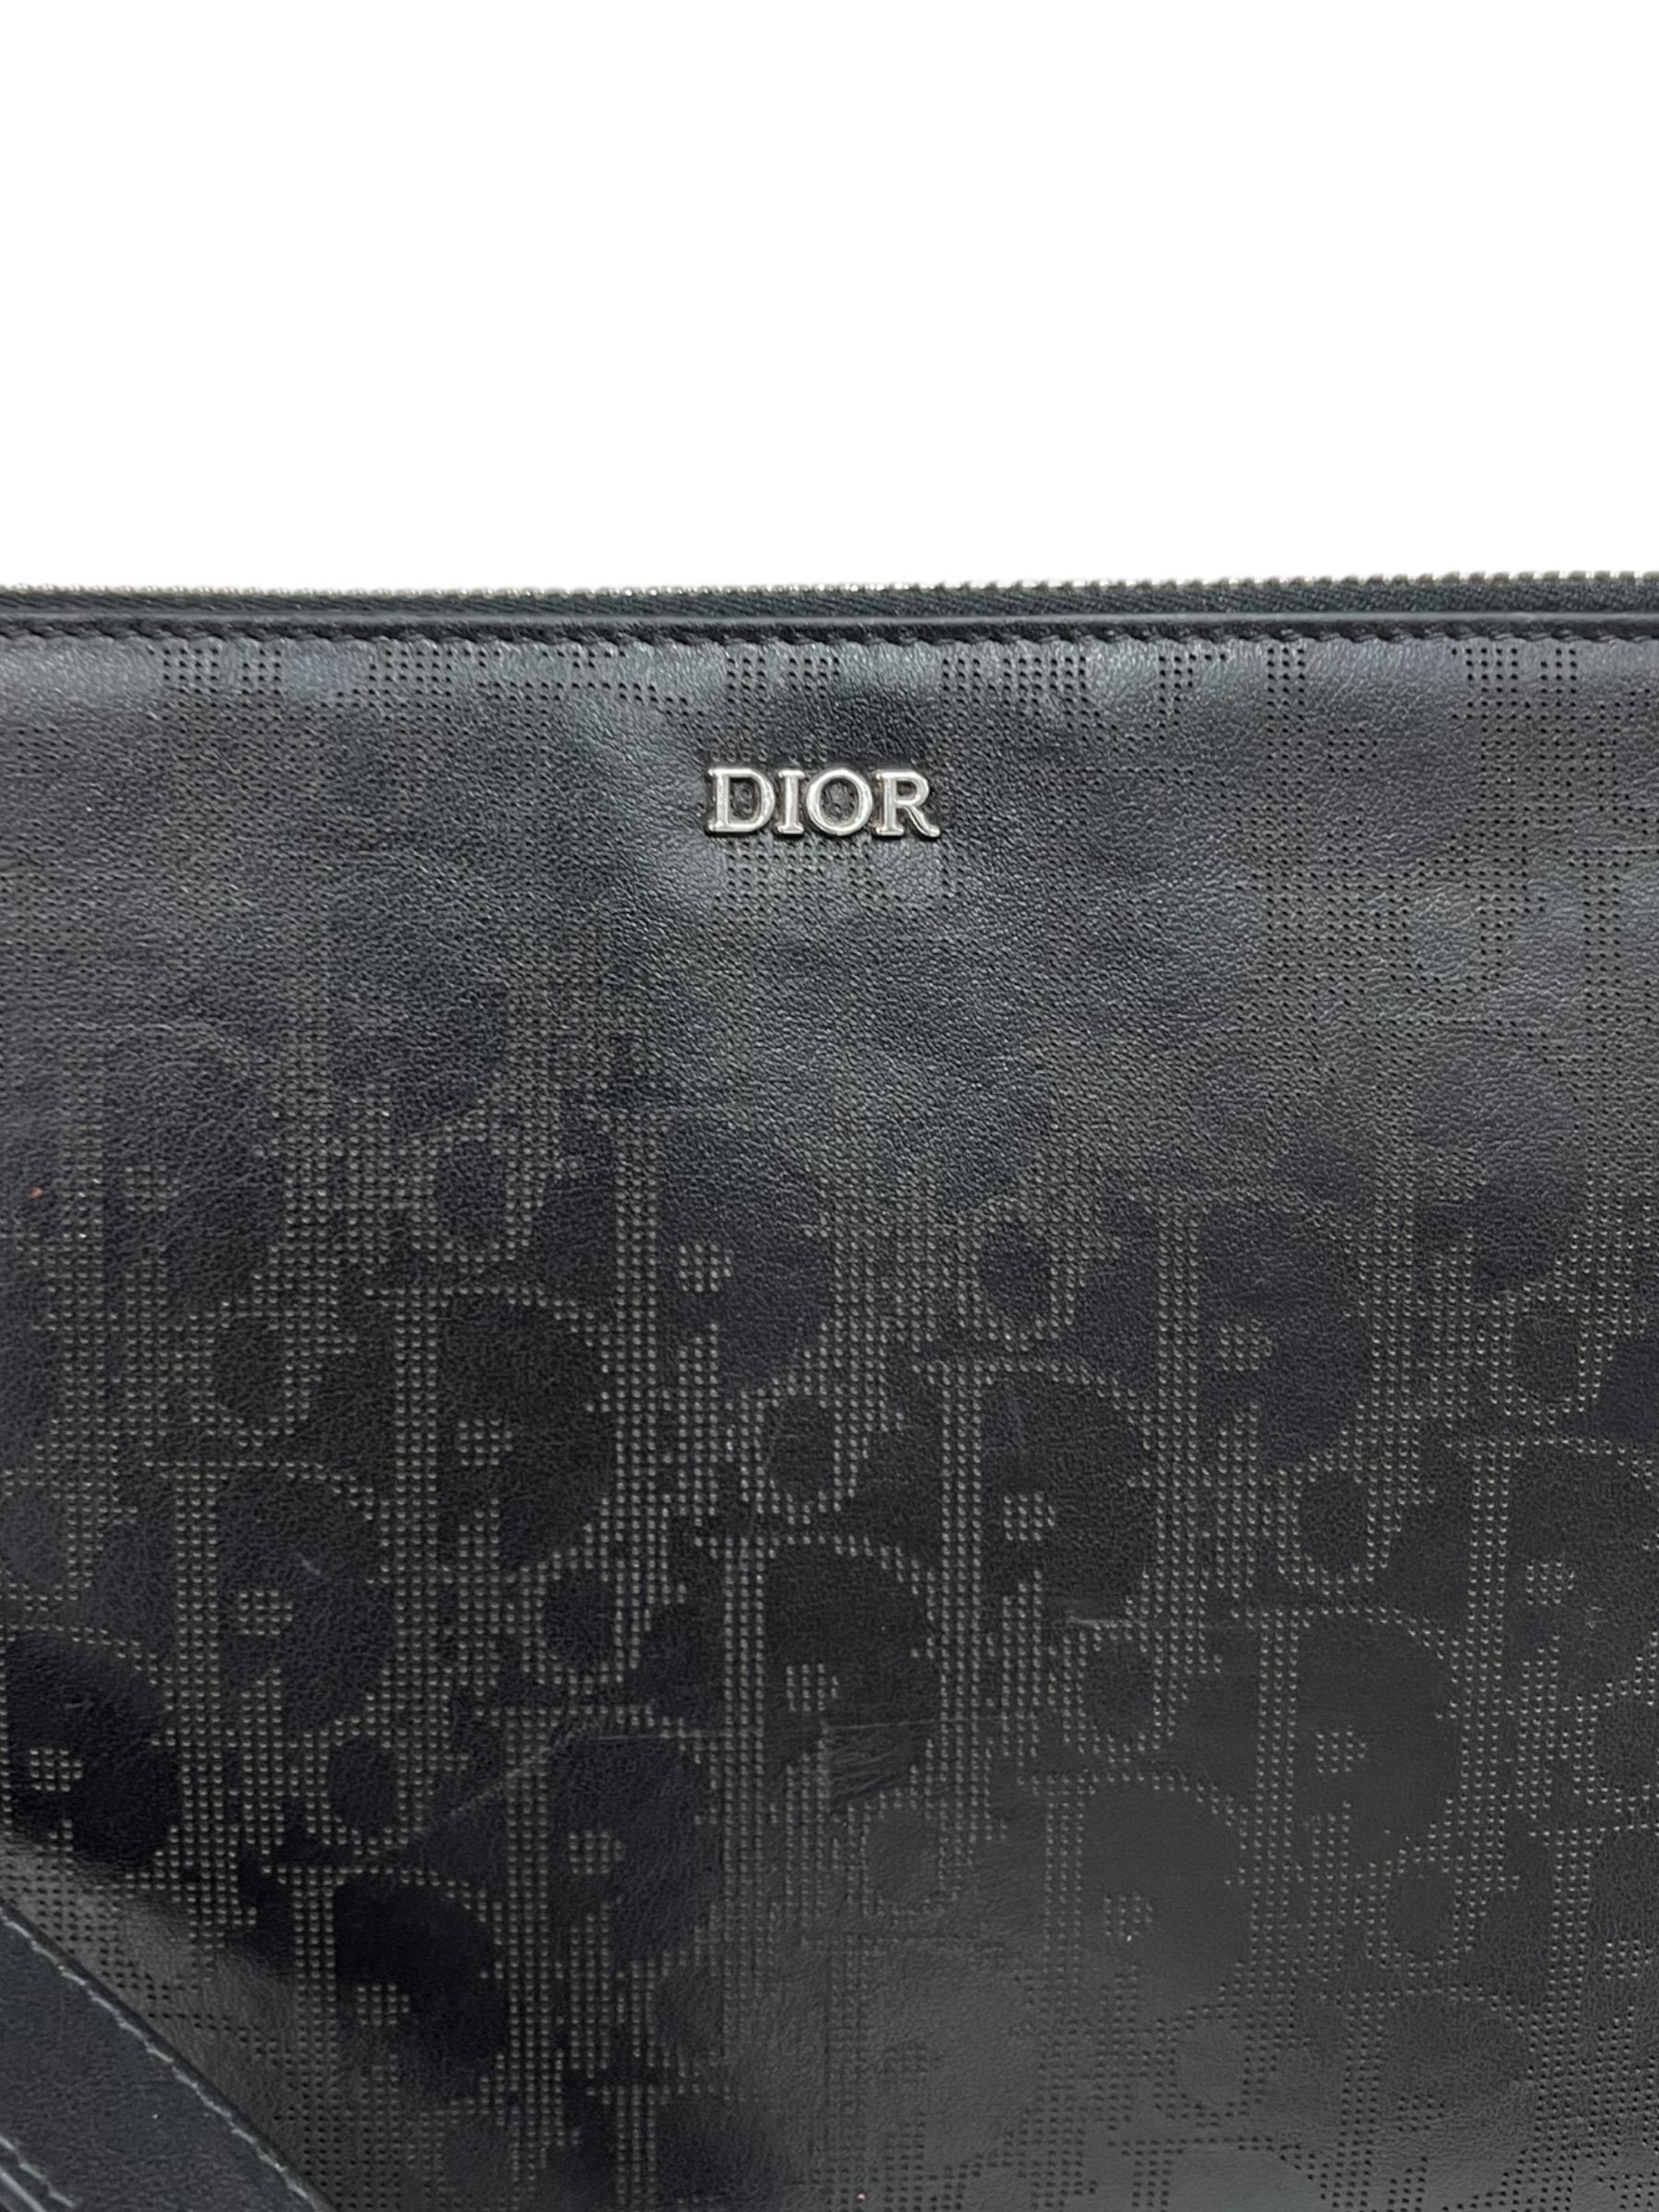 Clutch firmata Dior, modello Man, realizzata in pelle oblique galaxy con hardware argentati. Dotata di una chiusura superiore con zip, internamente rivestita in tessuto nero, capiente per l’essenziale. Munita di polsino rimovibile, l’articolo si